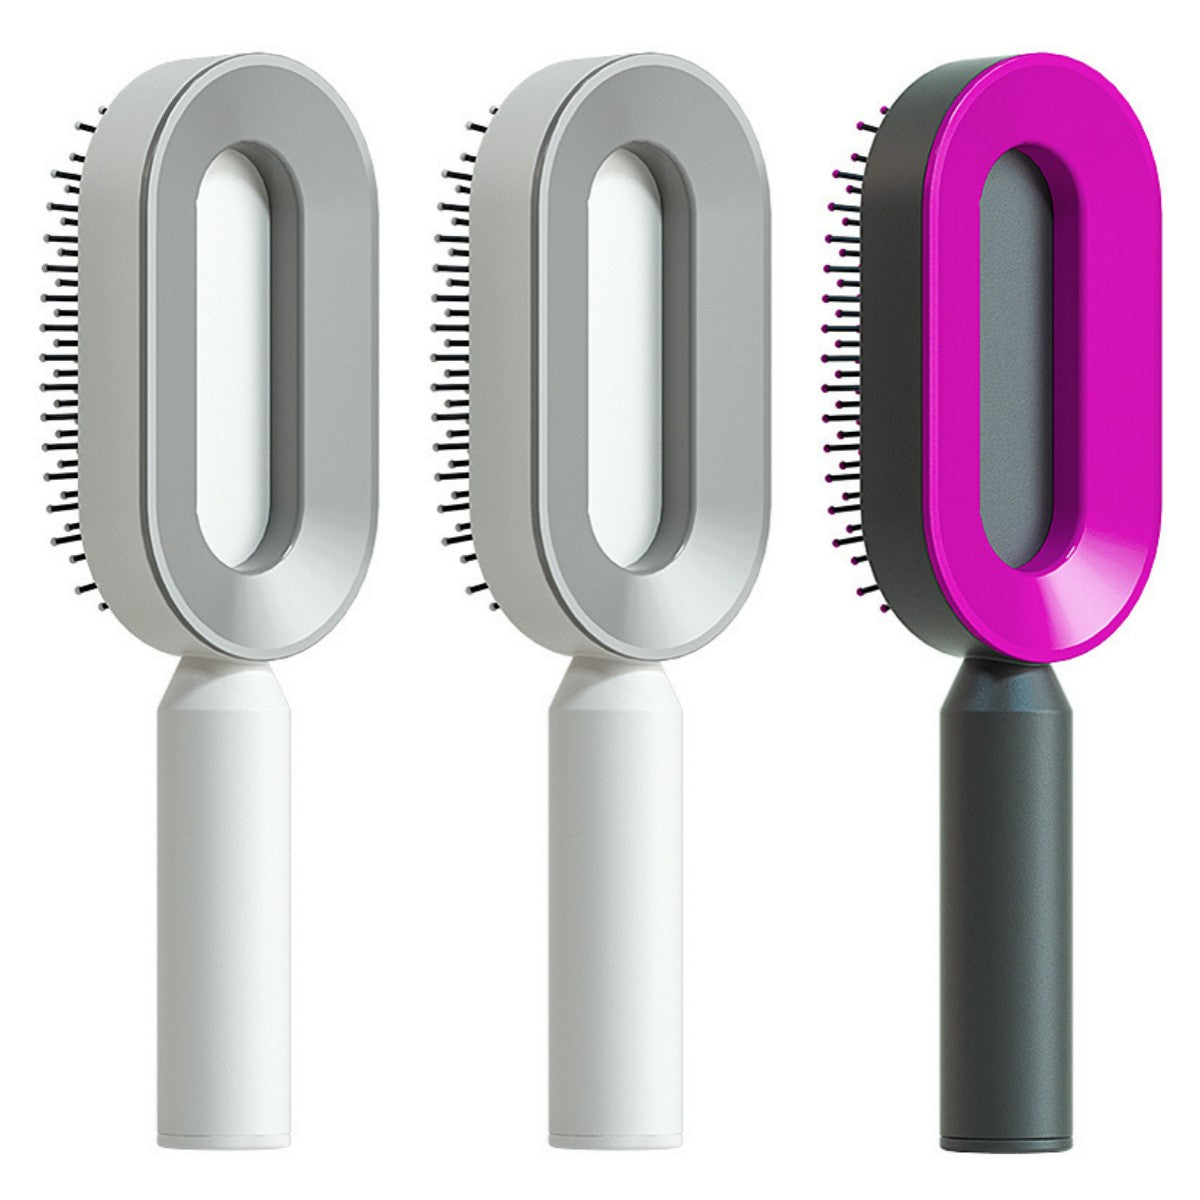 Hair Brush For Women